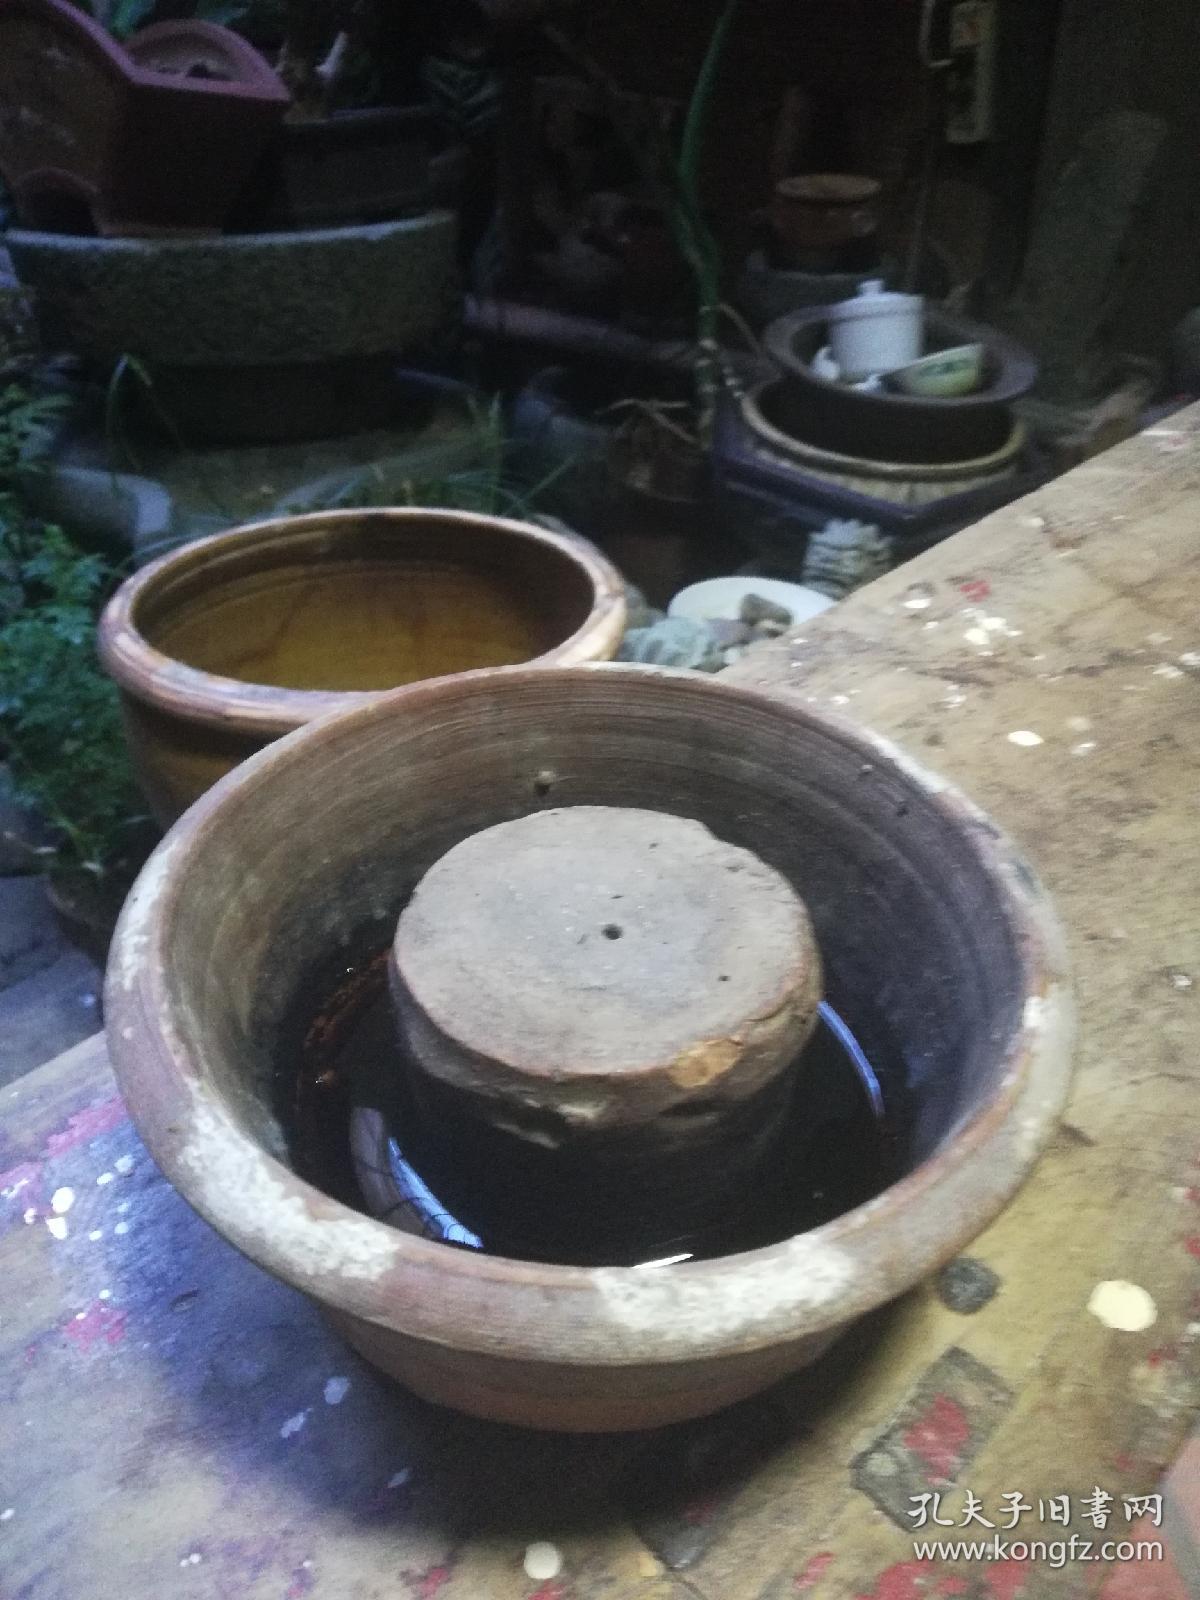 茶道文玩化明代陶器壶承、小干泡台